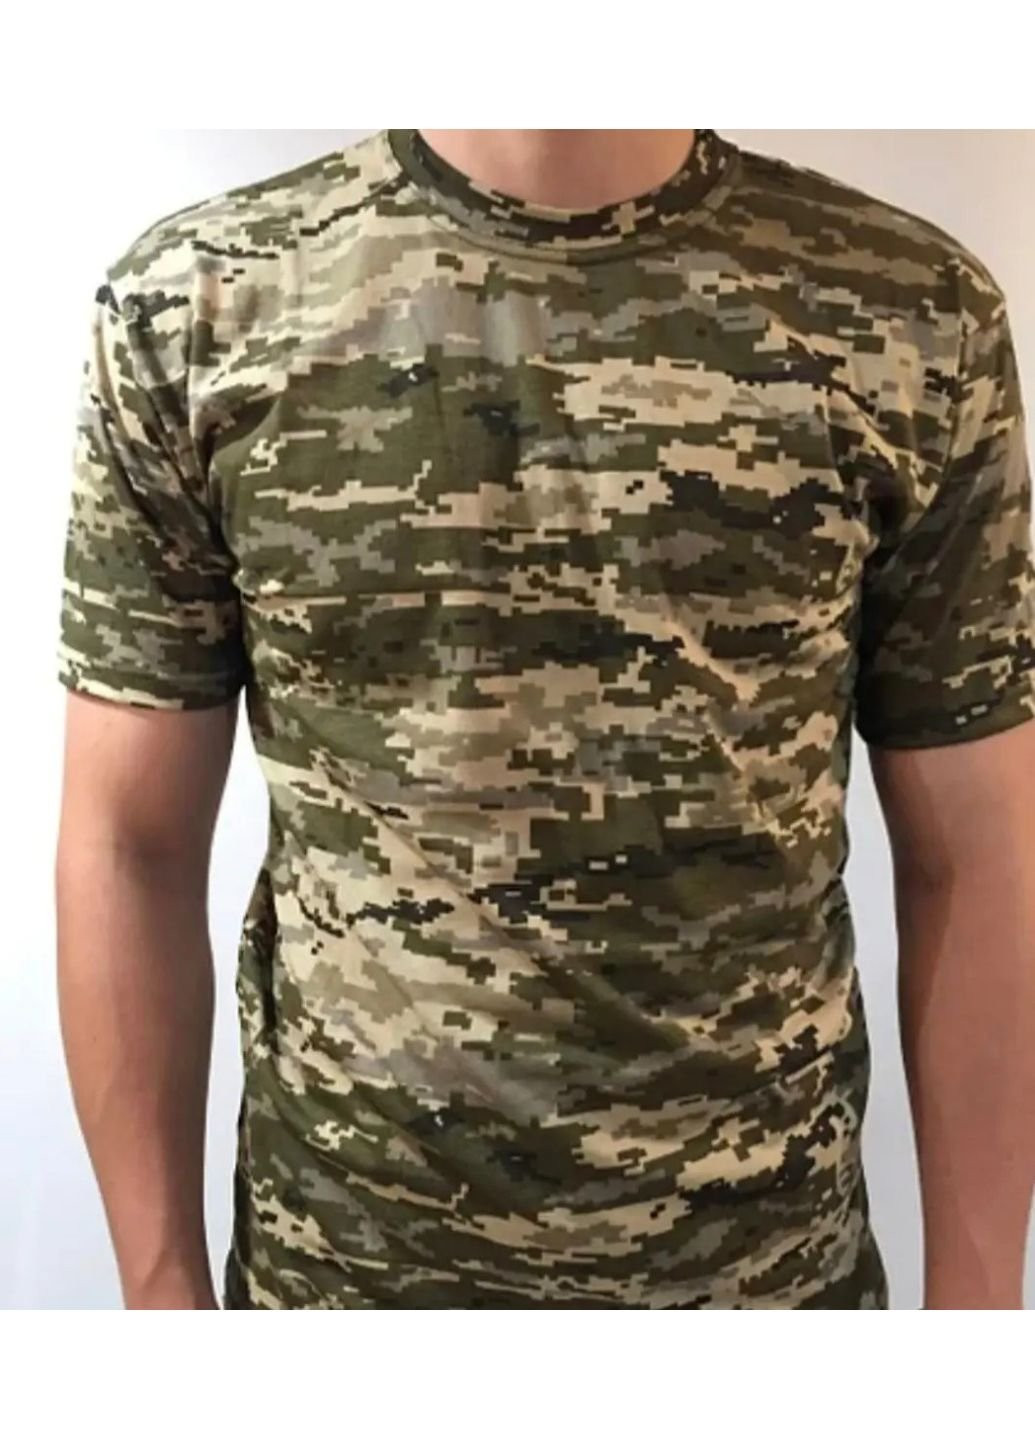 Хаки (оливковая) футболка мужская тактическая пиксель светлый всу 52 р 6577 хаки No Brand